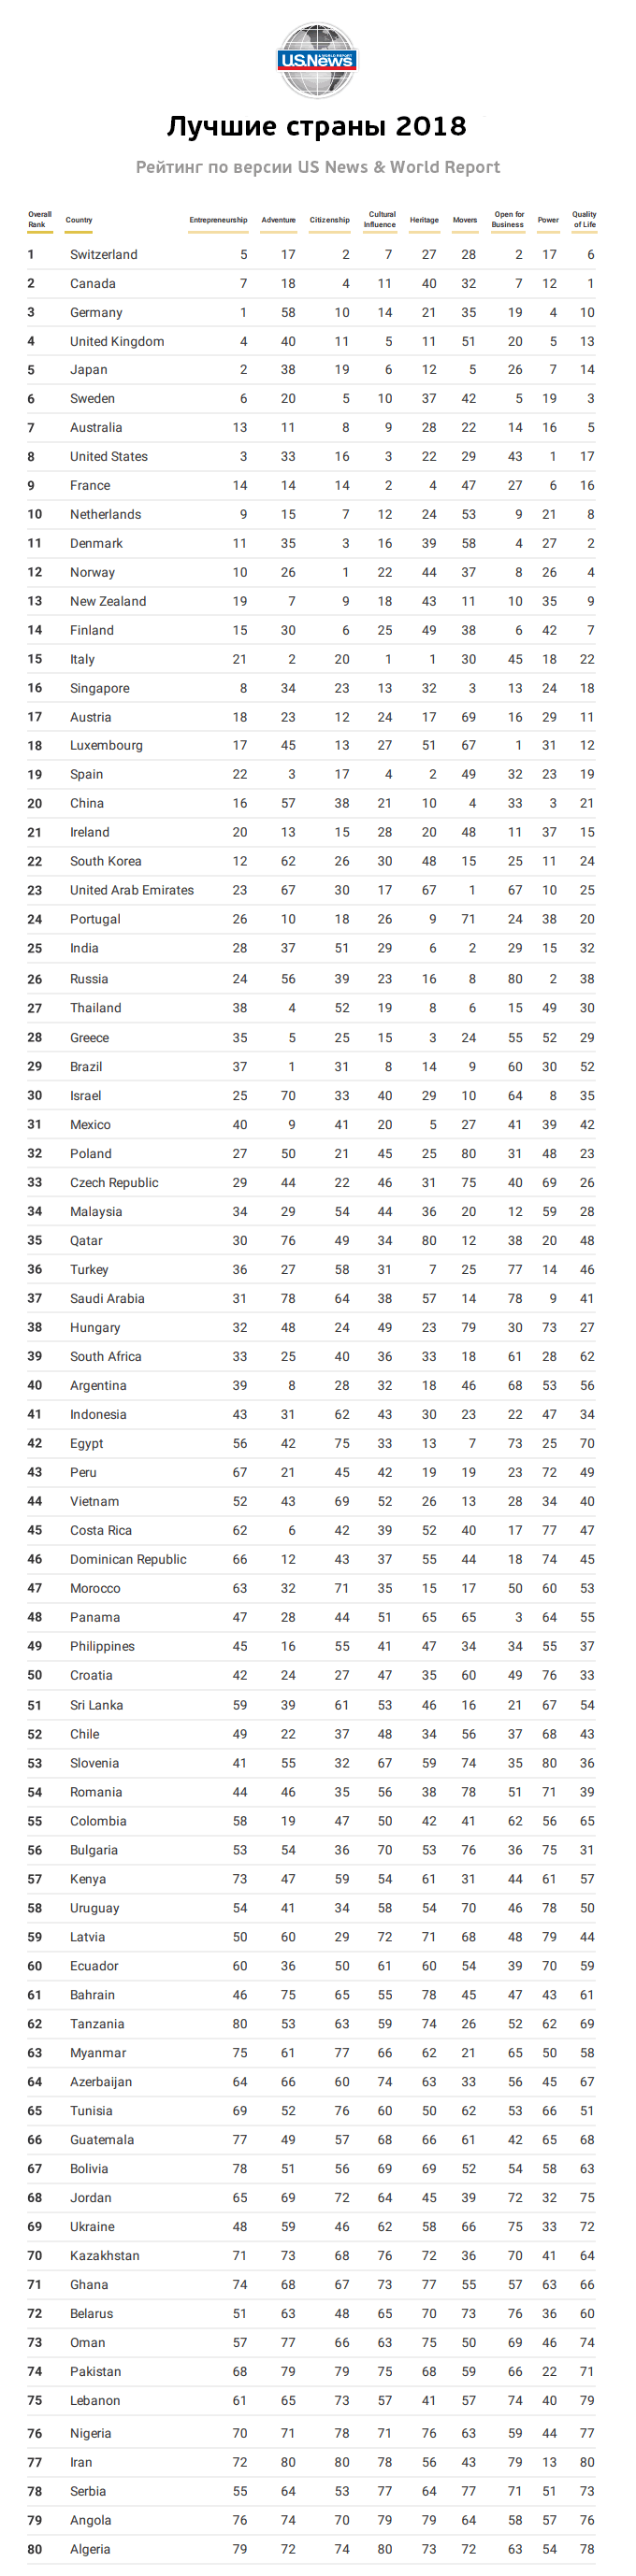 Landenrangschikking volgens levensstandaard 2018-tabel, volledige lijst